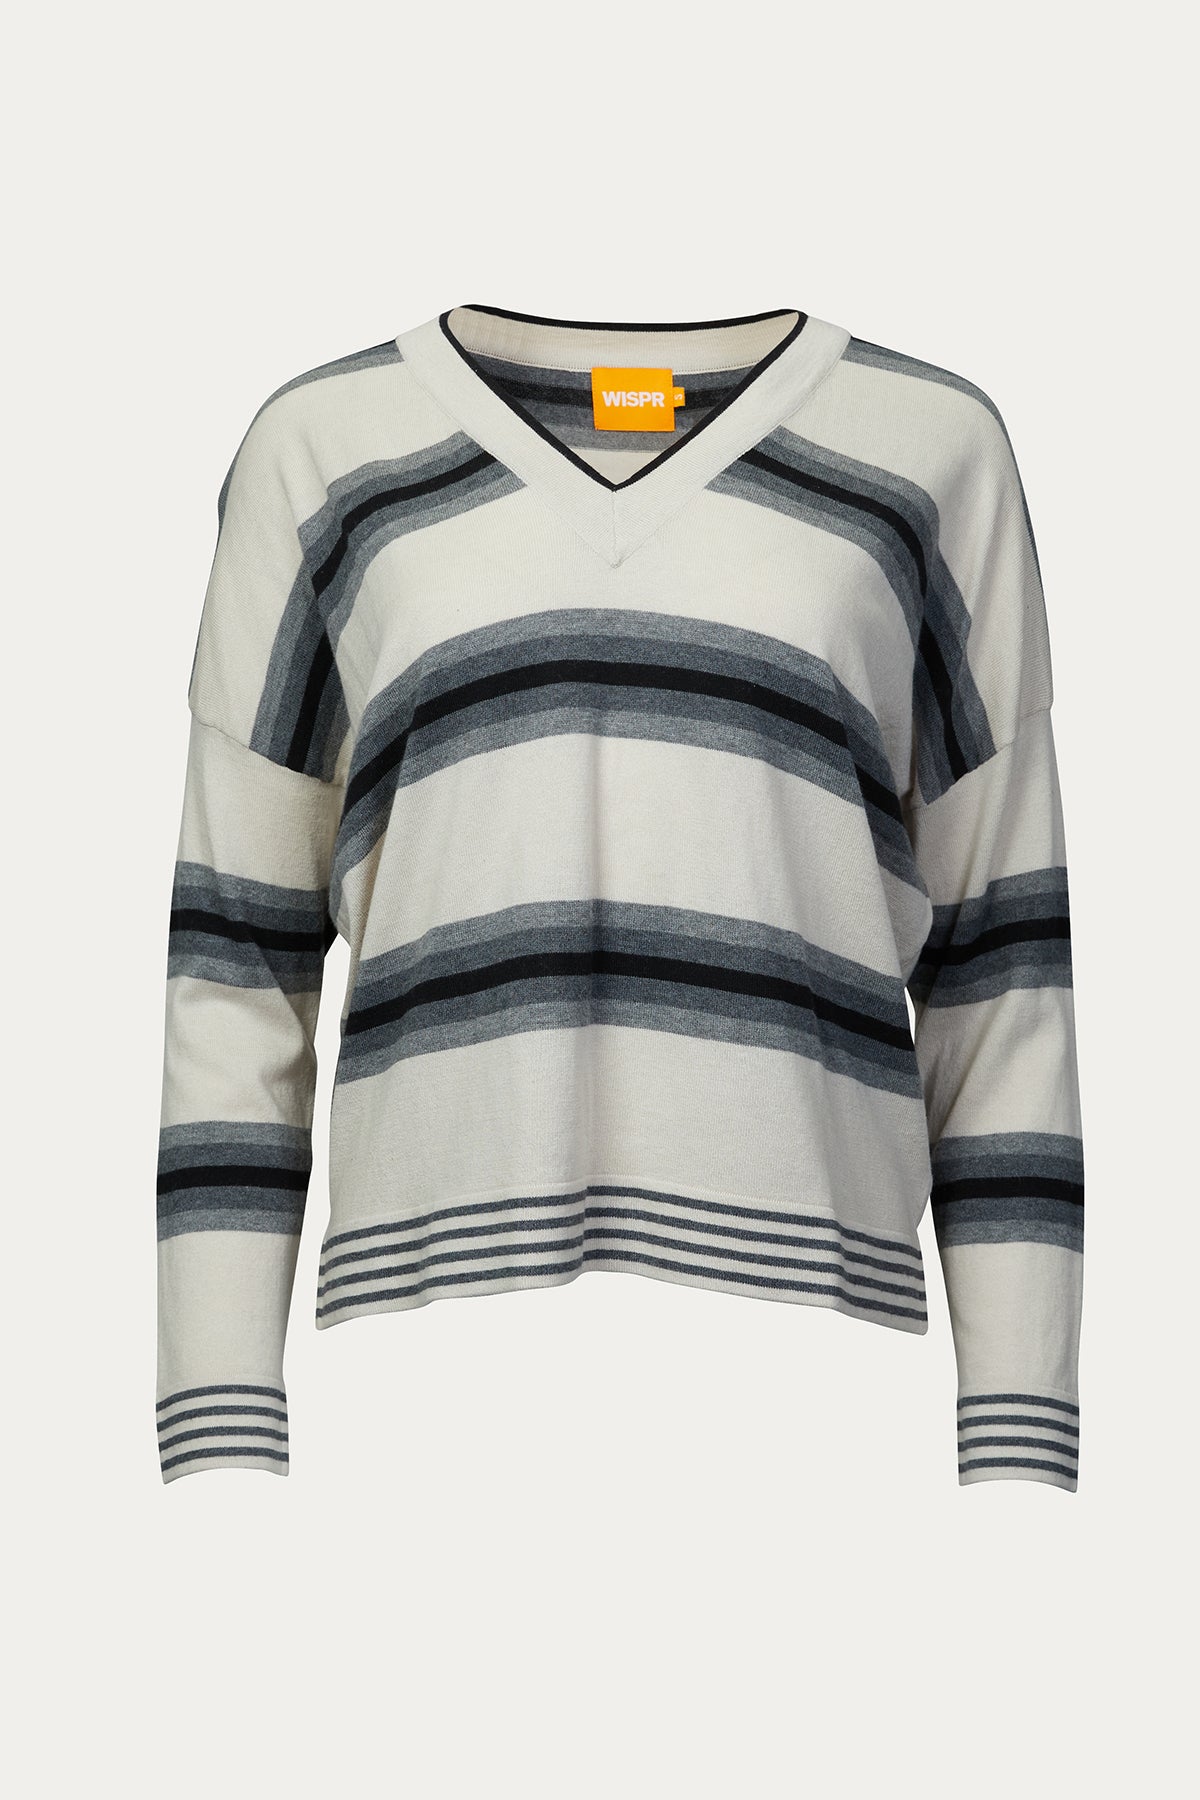 Brodie Wispr - Stone Wash Heart Sweater – CAMI